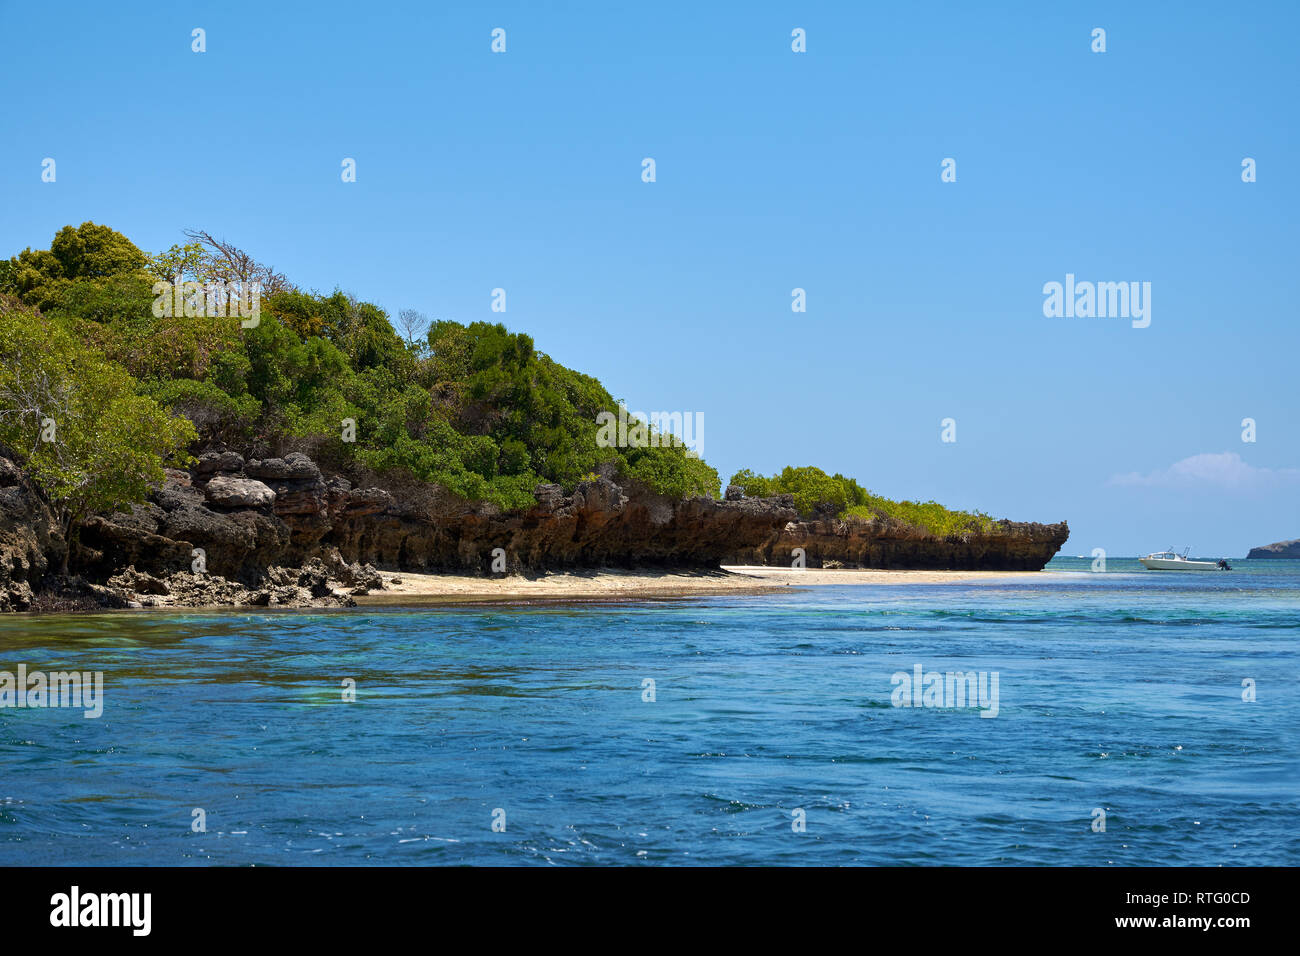 Avis de côtes avec plage. Mer ou Océan avec voile et ciel bleu. L'Afrique, Kenya Banque D'Images